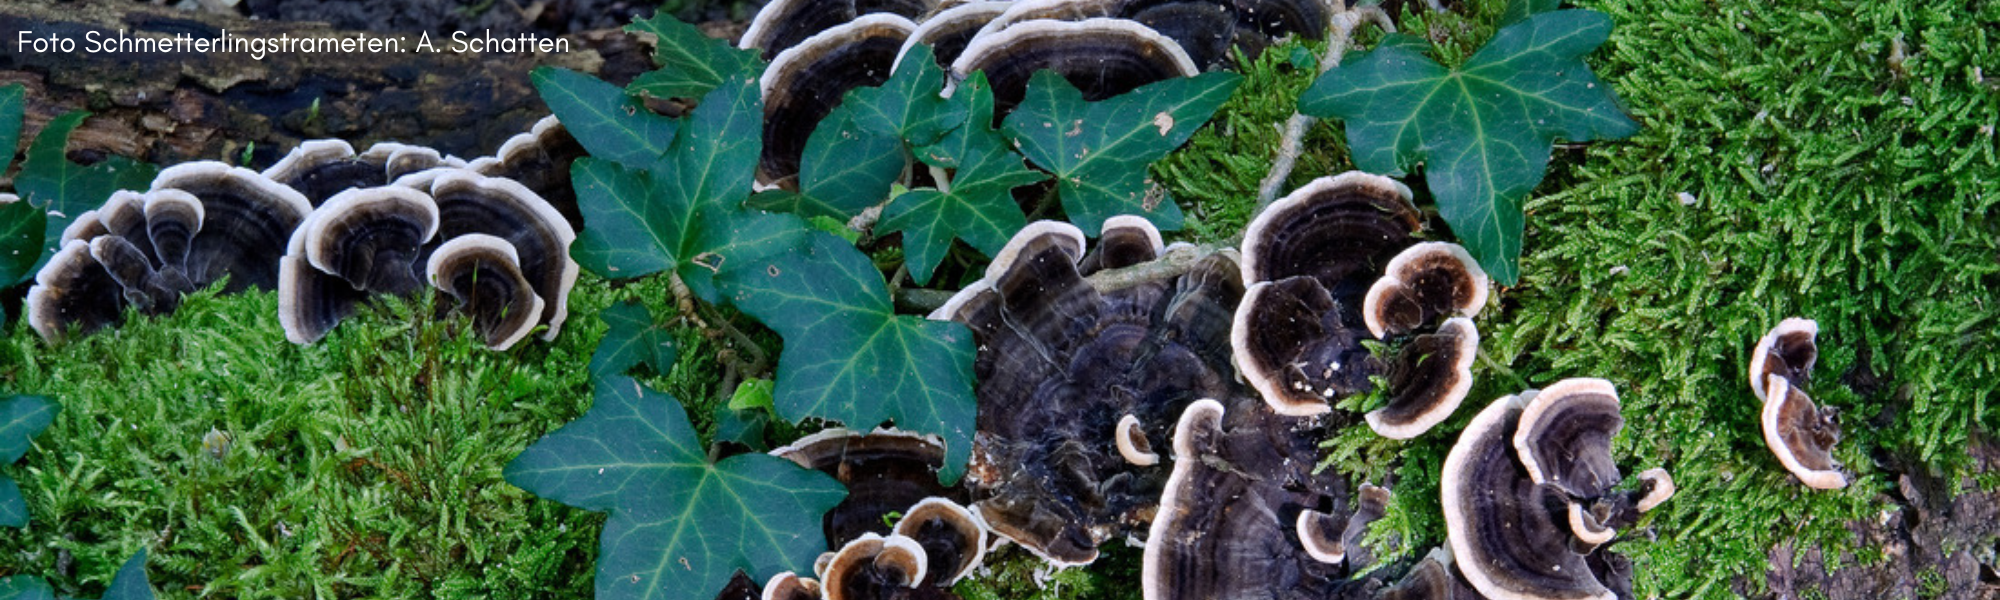 Alleskönner Pilze? – Heimische Heil- und Vitalpilze – Eine Pilzwanderung durch den frühlingshaften Prater